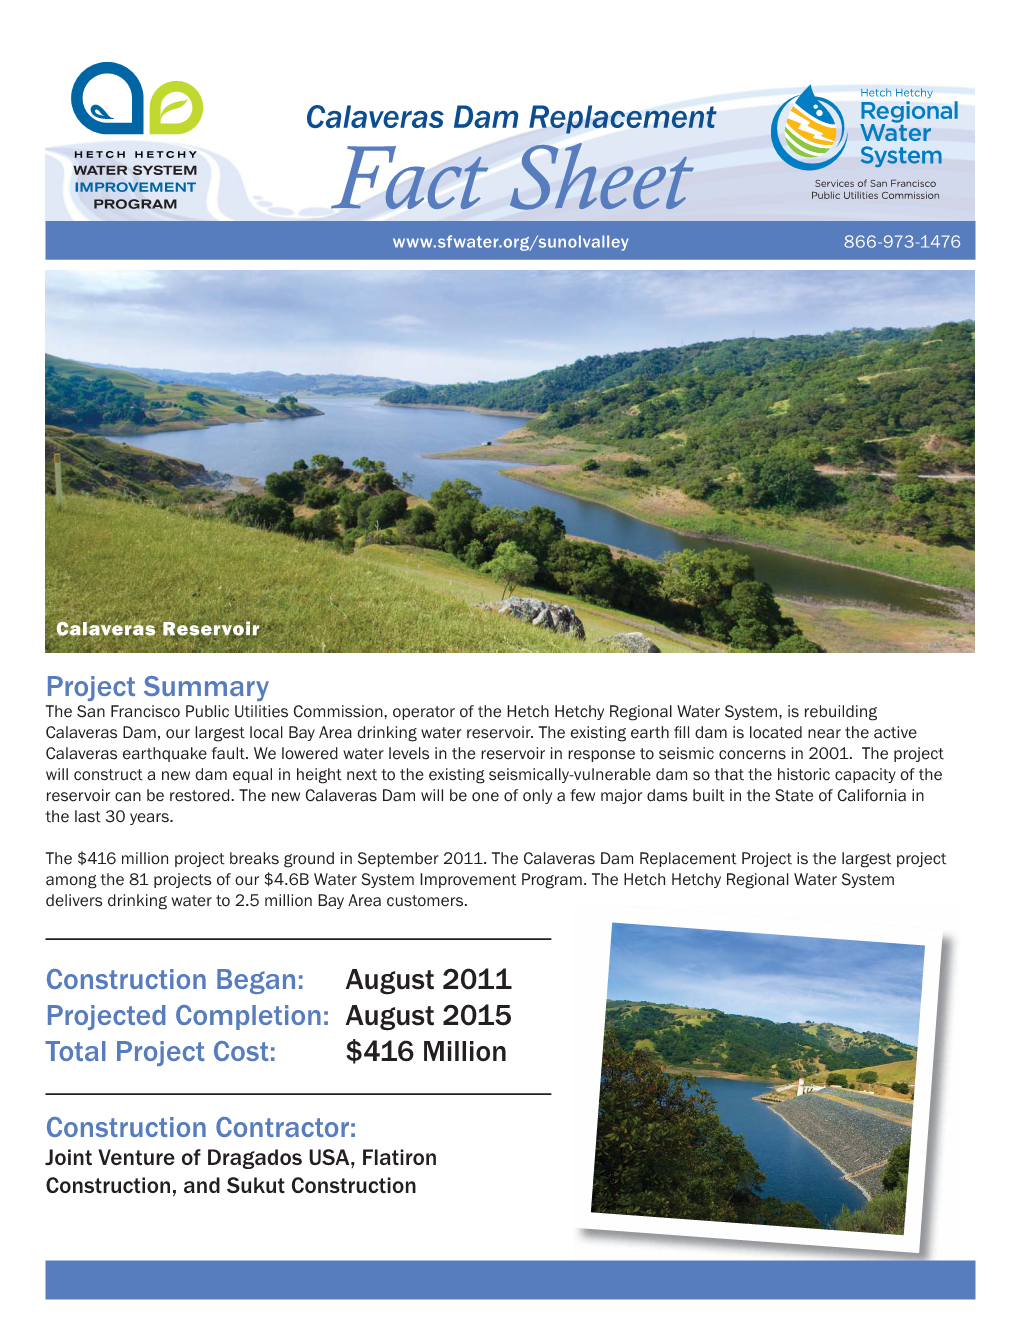 Calaveras Dam Fact Sheet Bcj 091511 V2.Indd